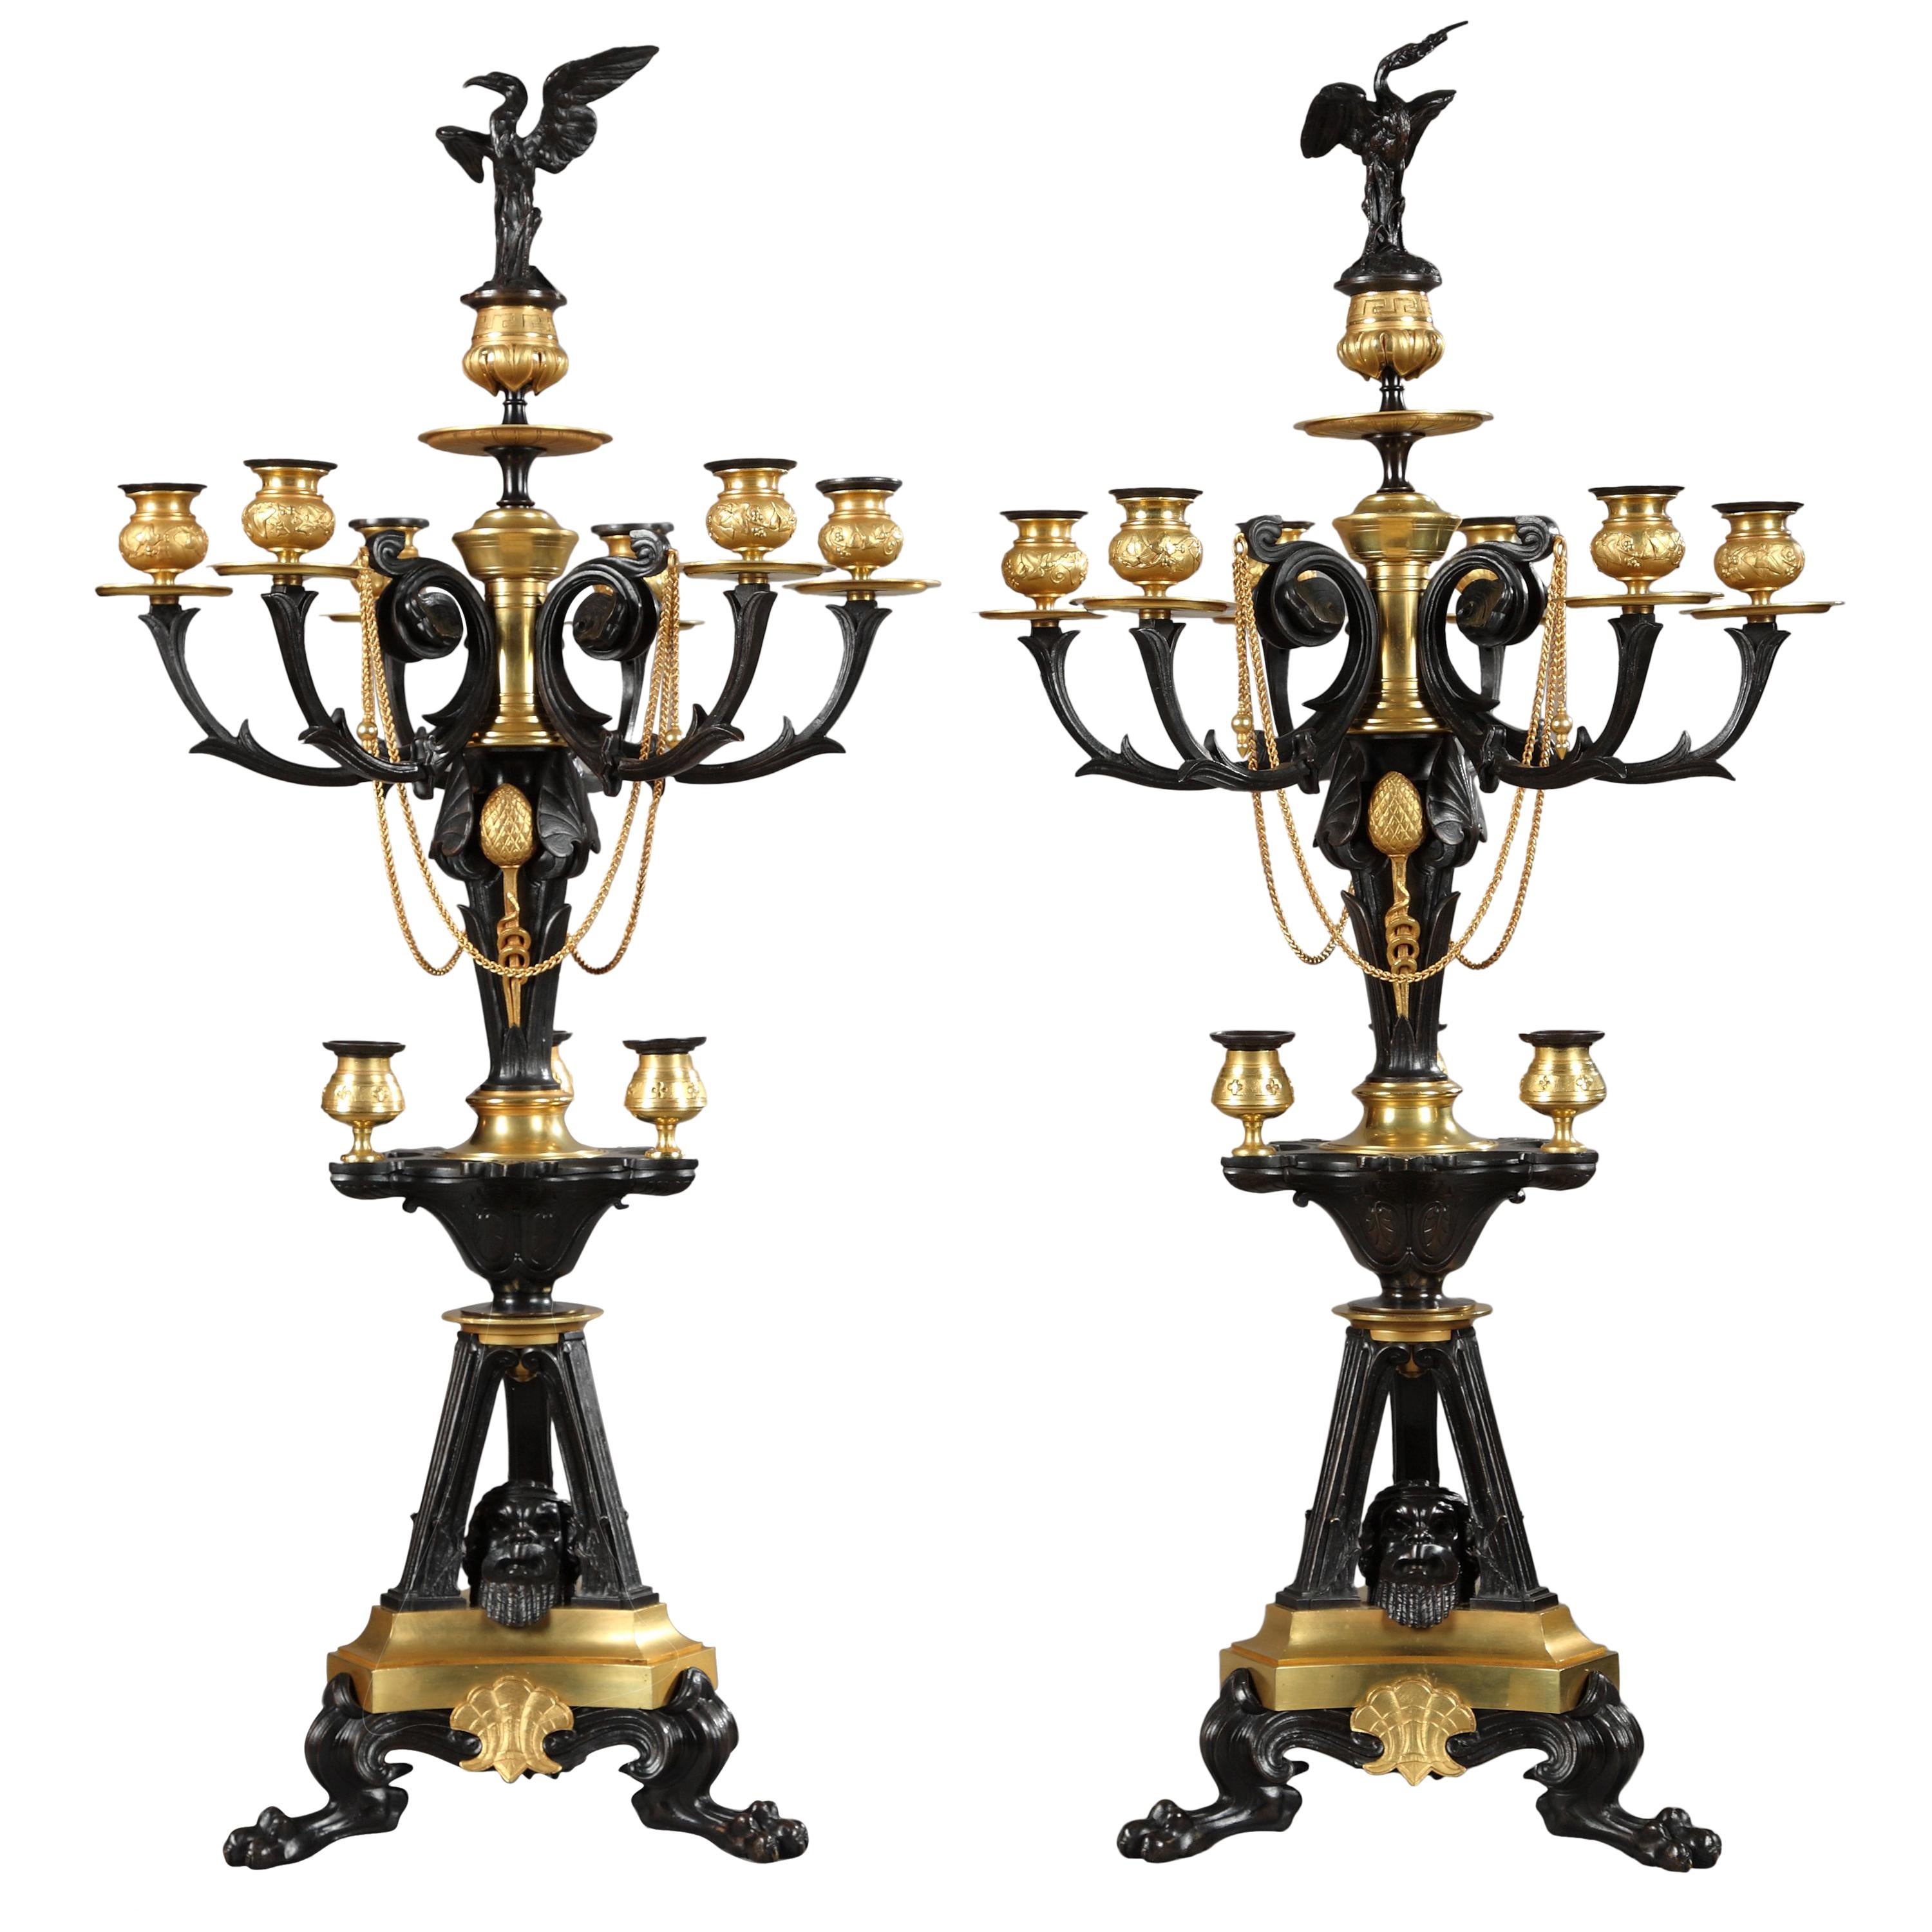 Paire de candélabres néo-grecs en bronze attribués à G. Servant, France, vers 1870